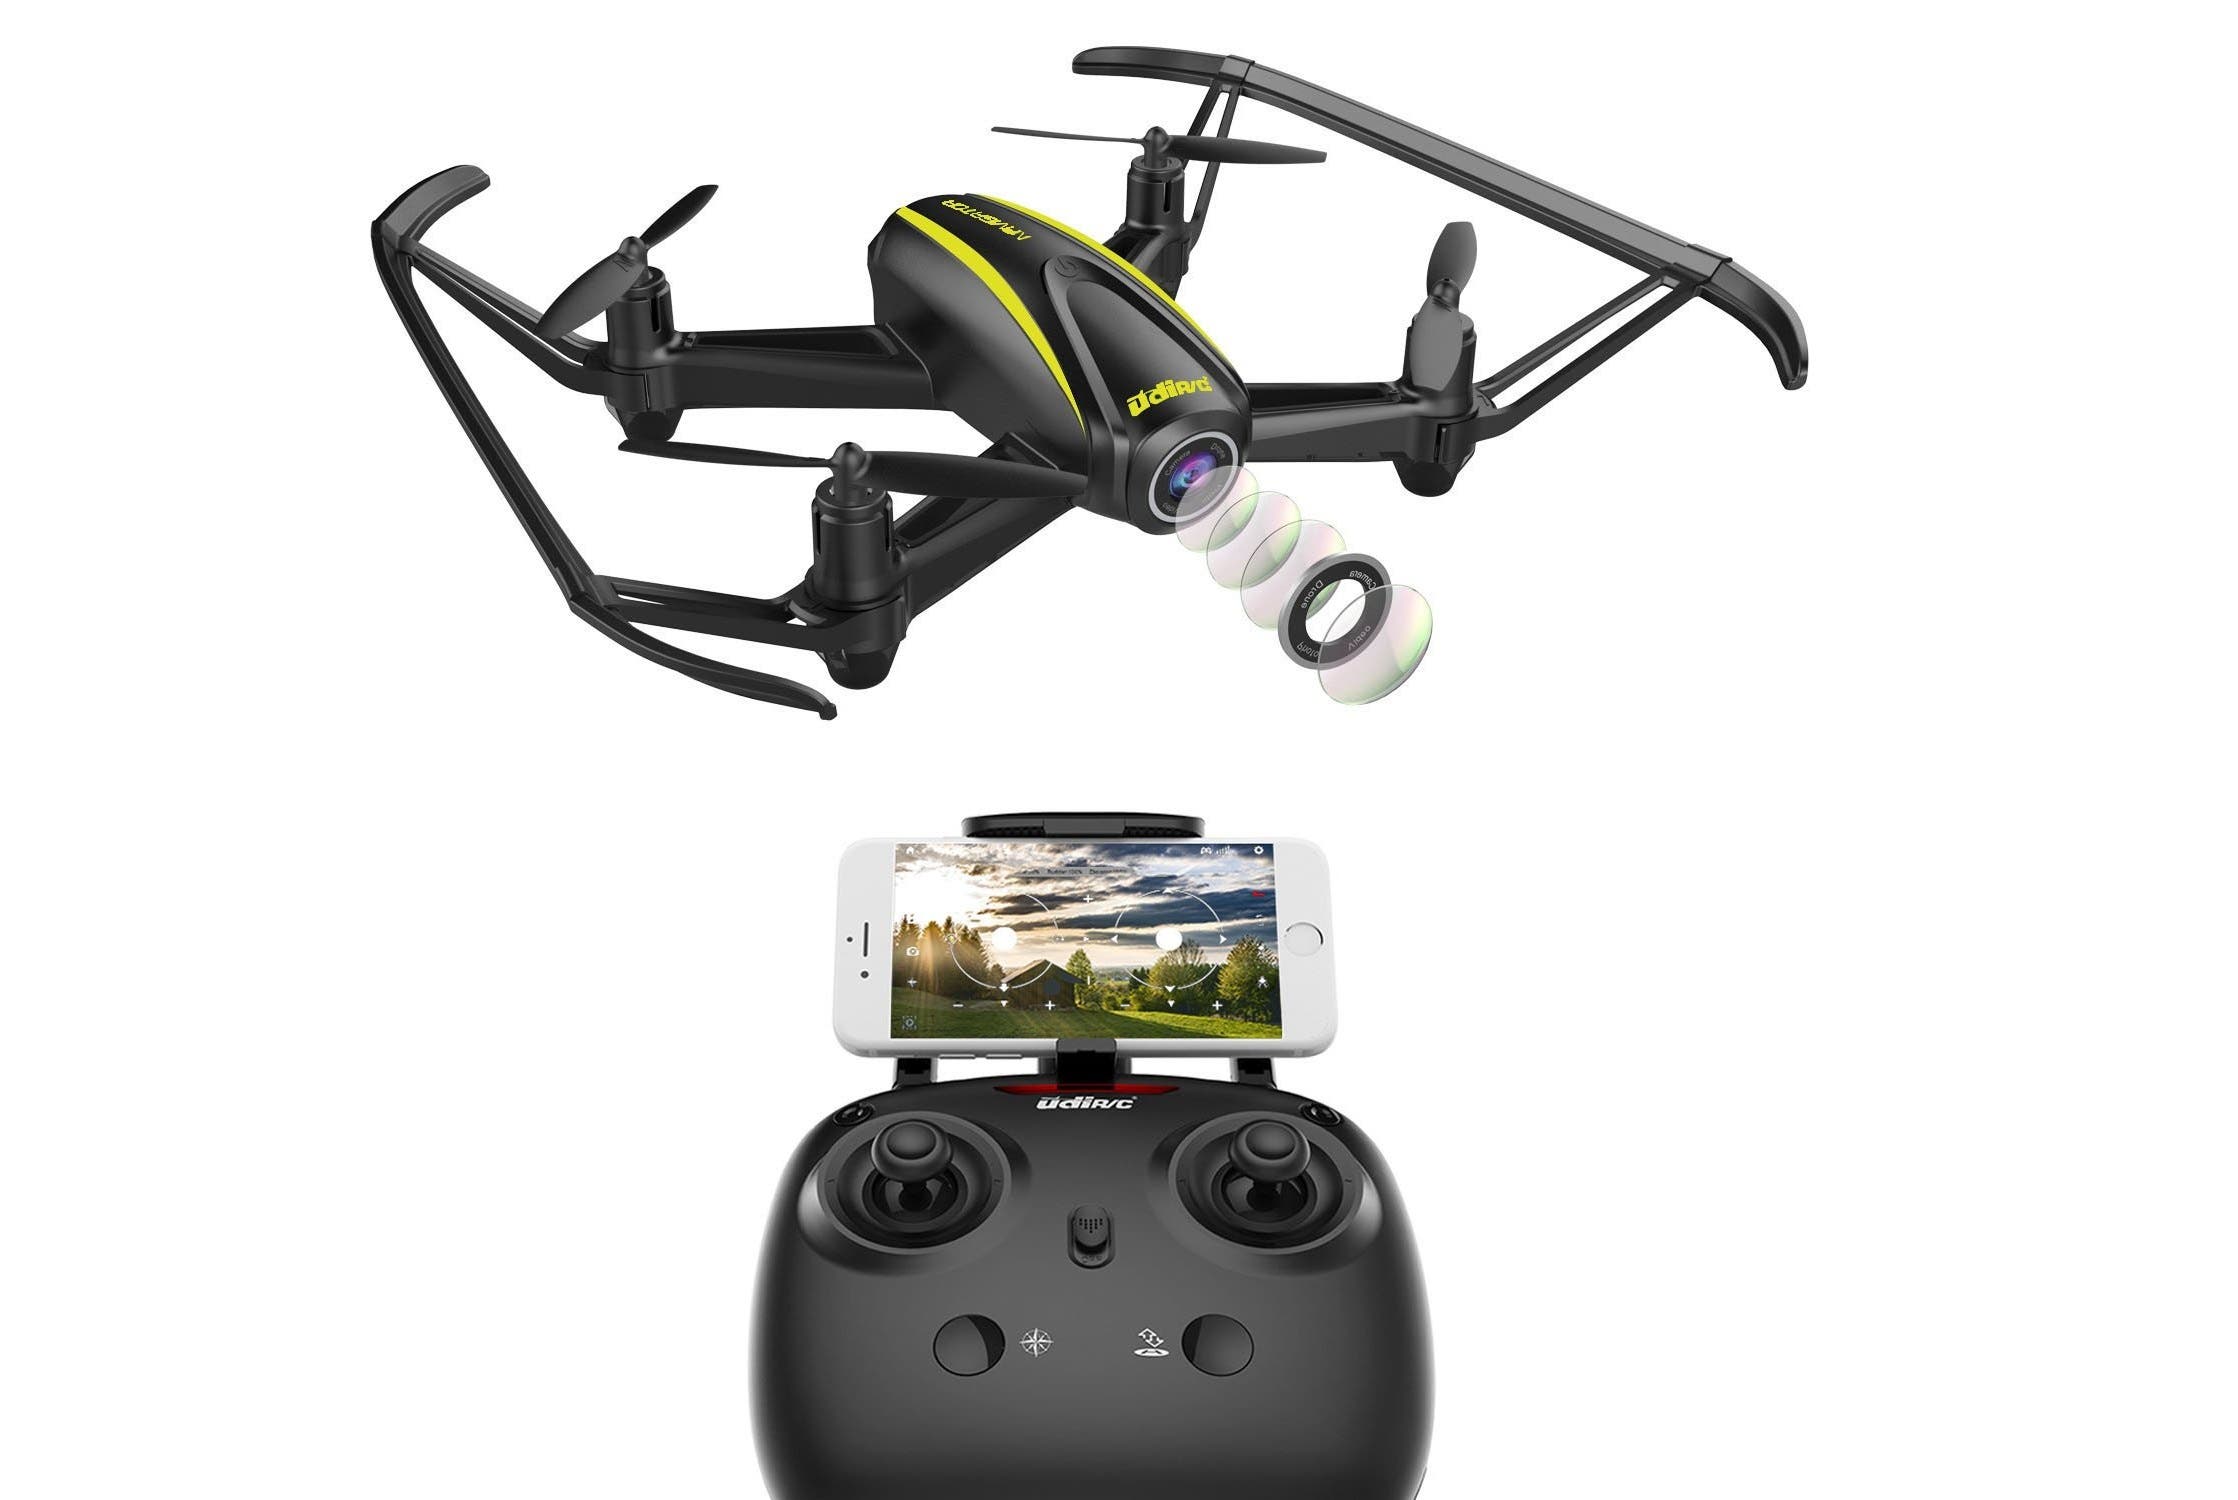 DROCON U31W FPV Drone at Amazon - Gizchina.com